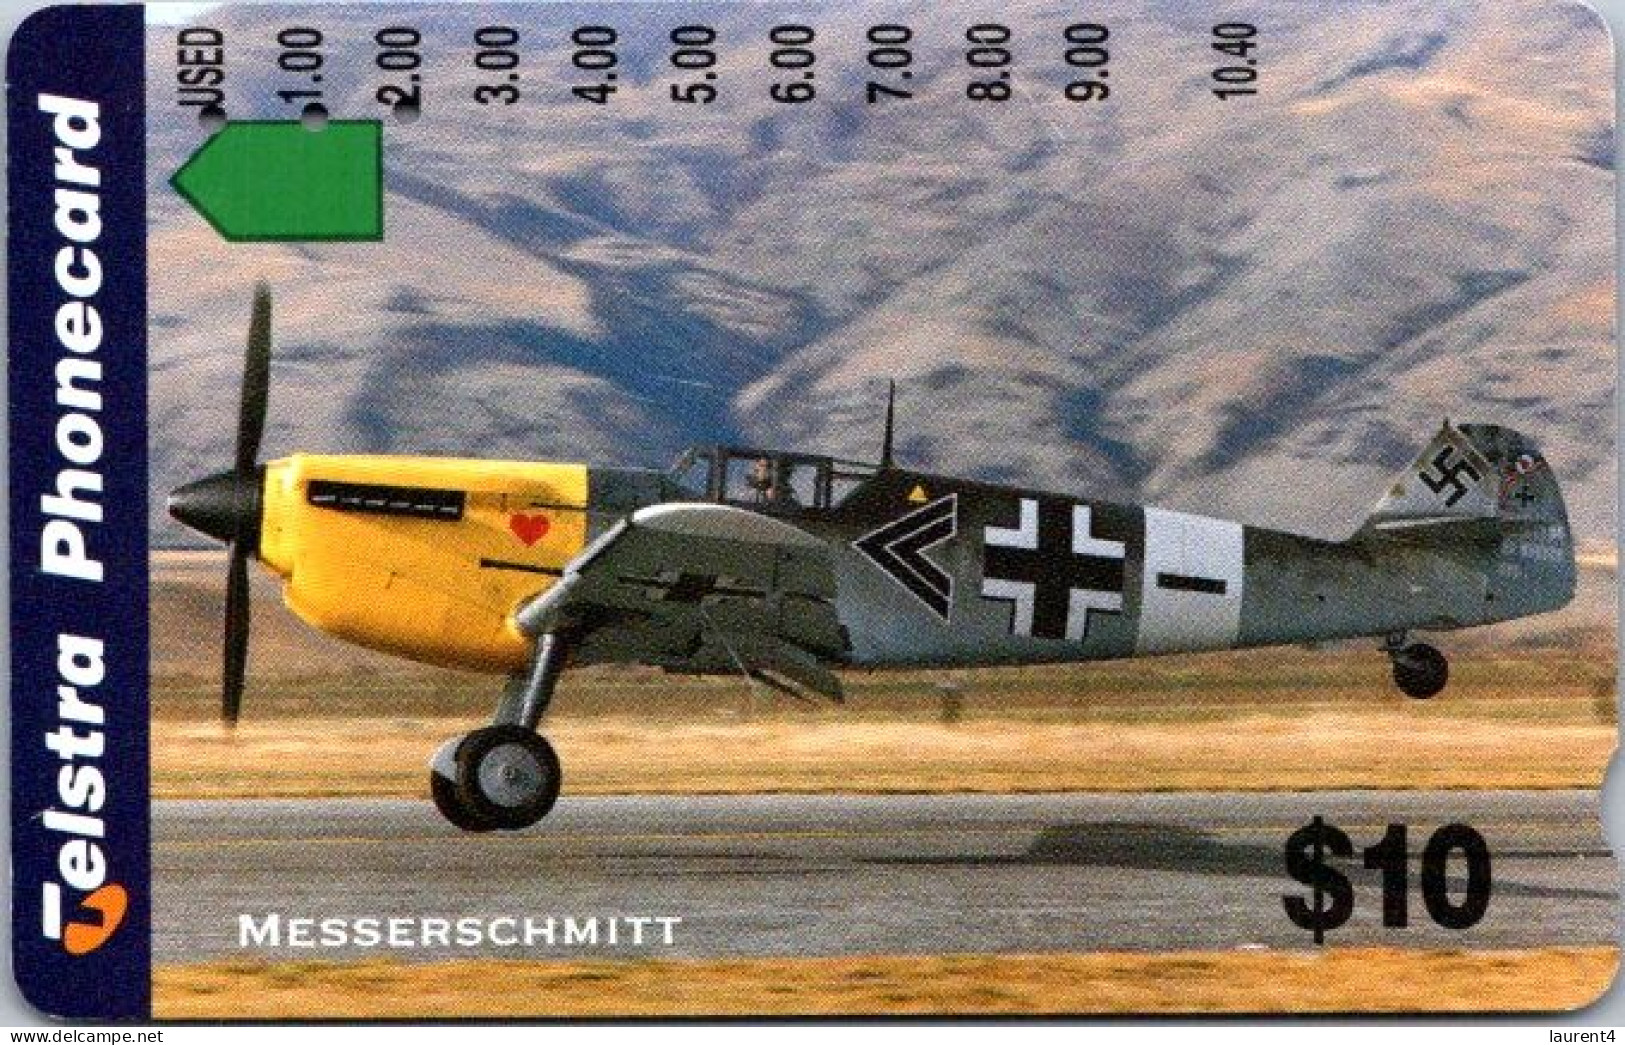 8-3-2024 (Phonecard) Messerchhmitt WWII Aircraft - $ 10.00 Phonecard - Carte De Téléphoone (1 Card) - Australia